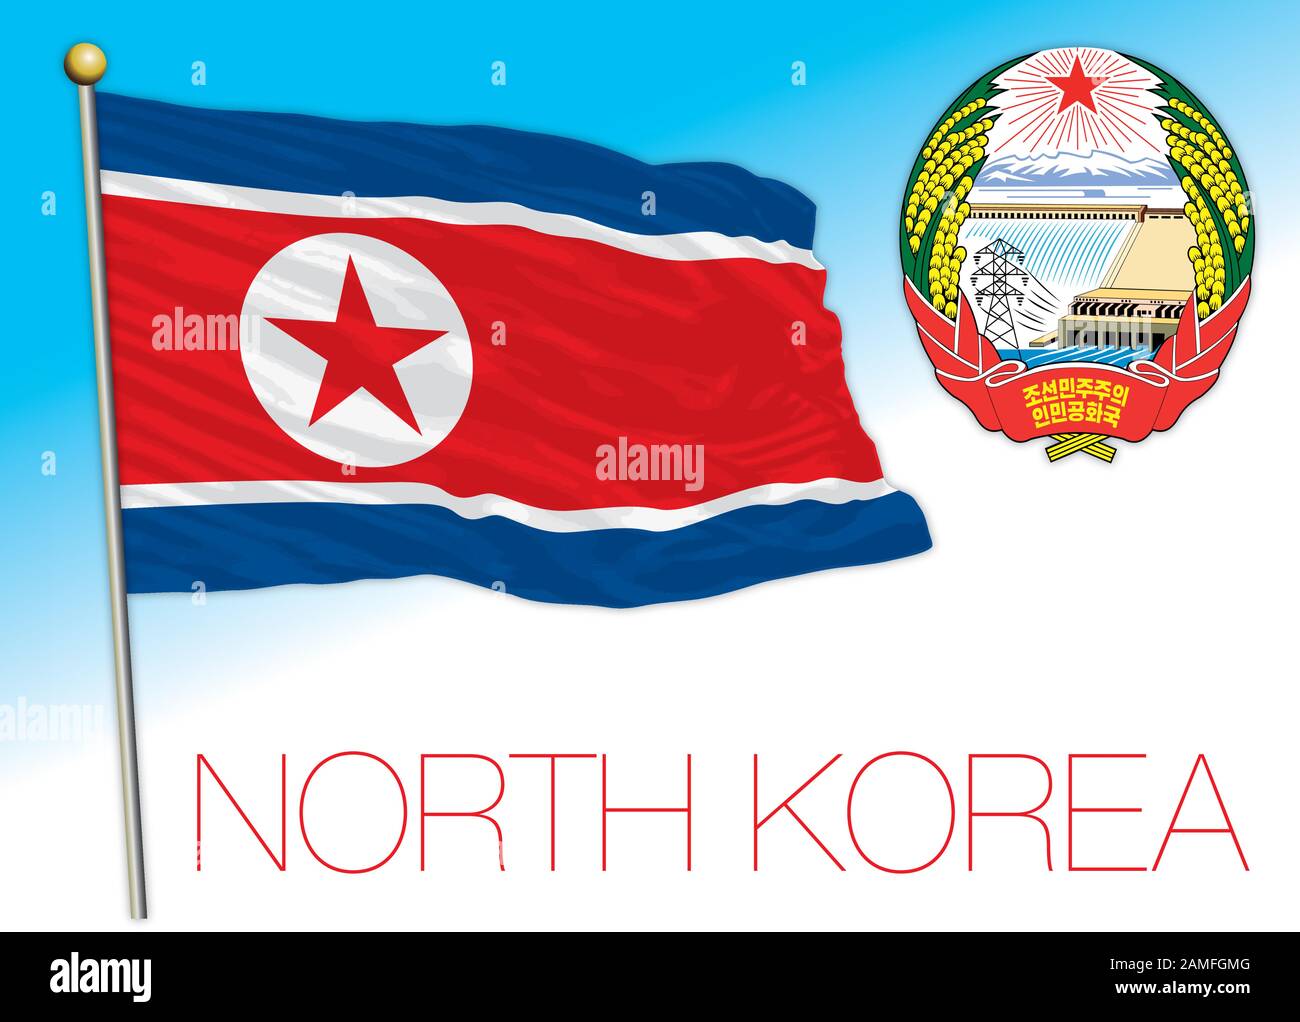 Offizielle Flagge und Wappen Nordkoreas, asiatisches Land, Vektorgrafiken Stock Vektor